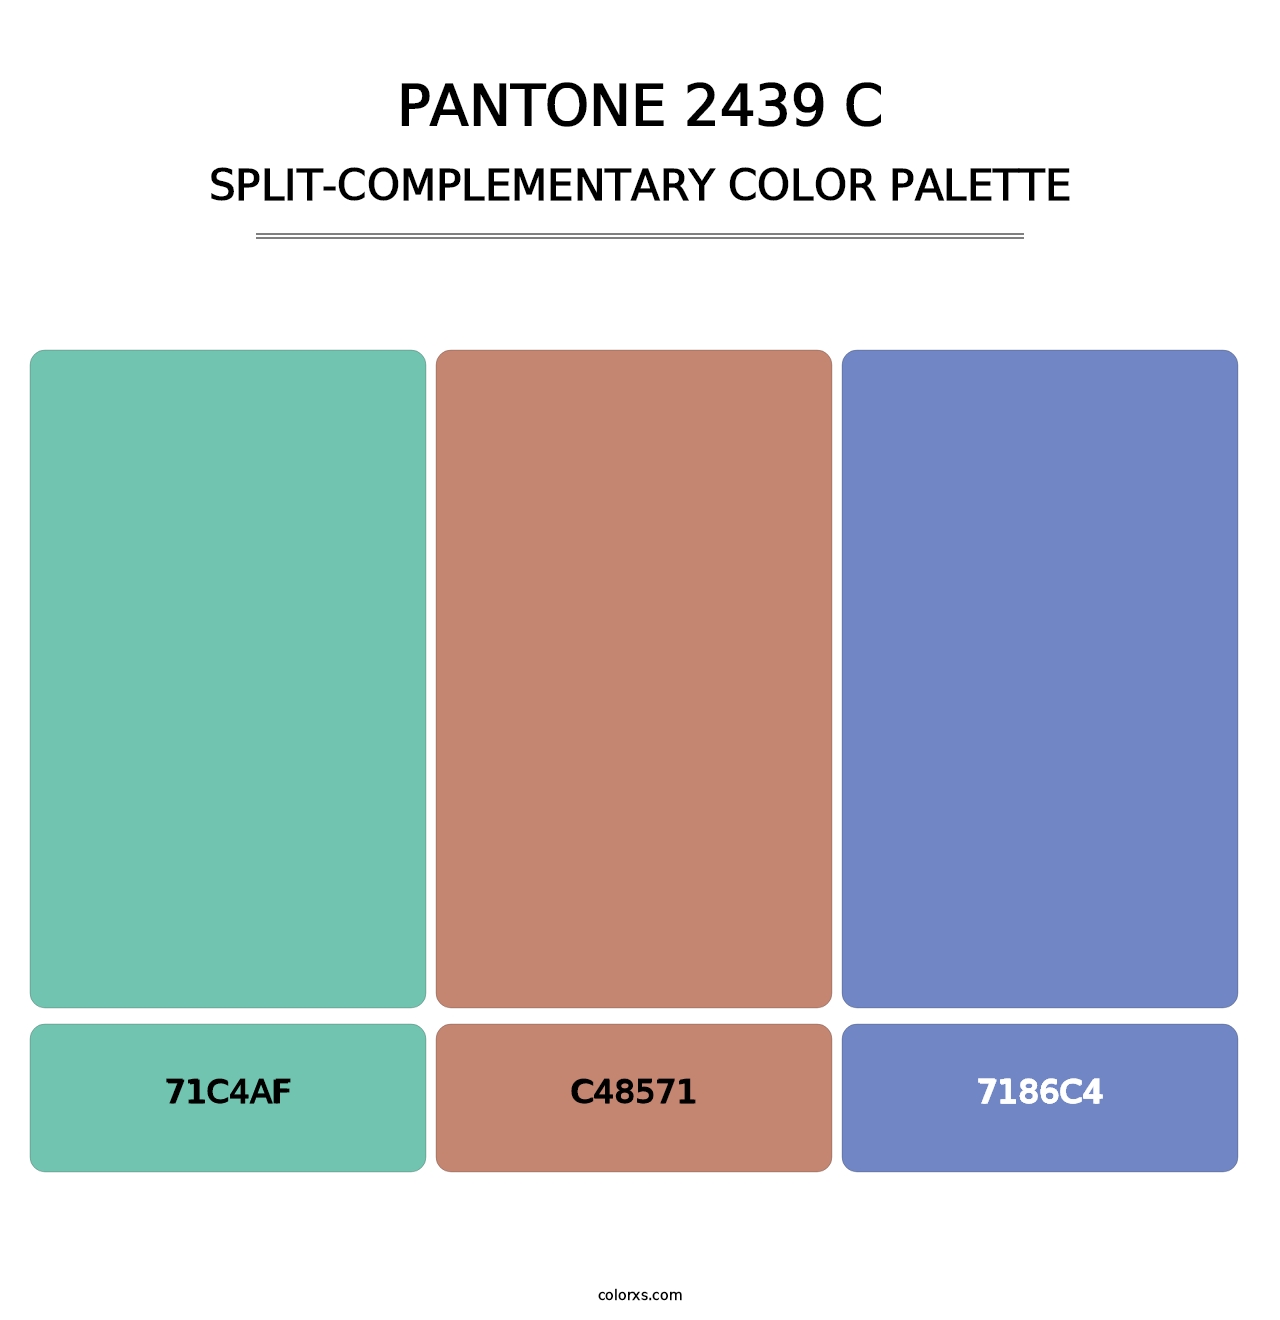 PANTONE 2439 C - Split-Complementary Color Palette